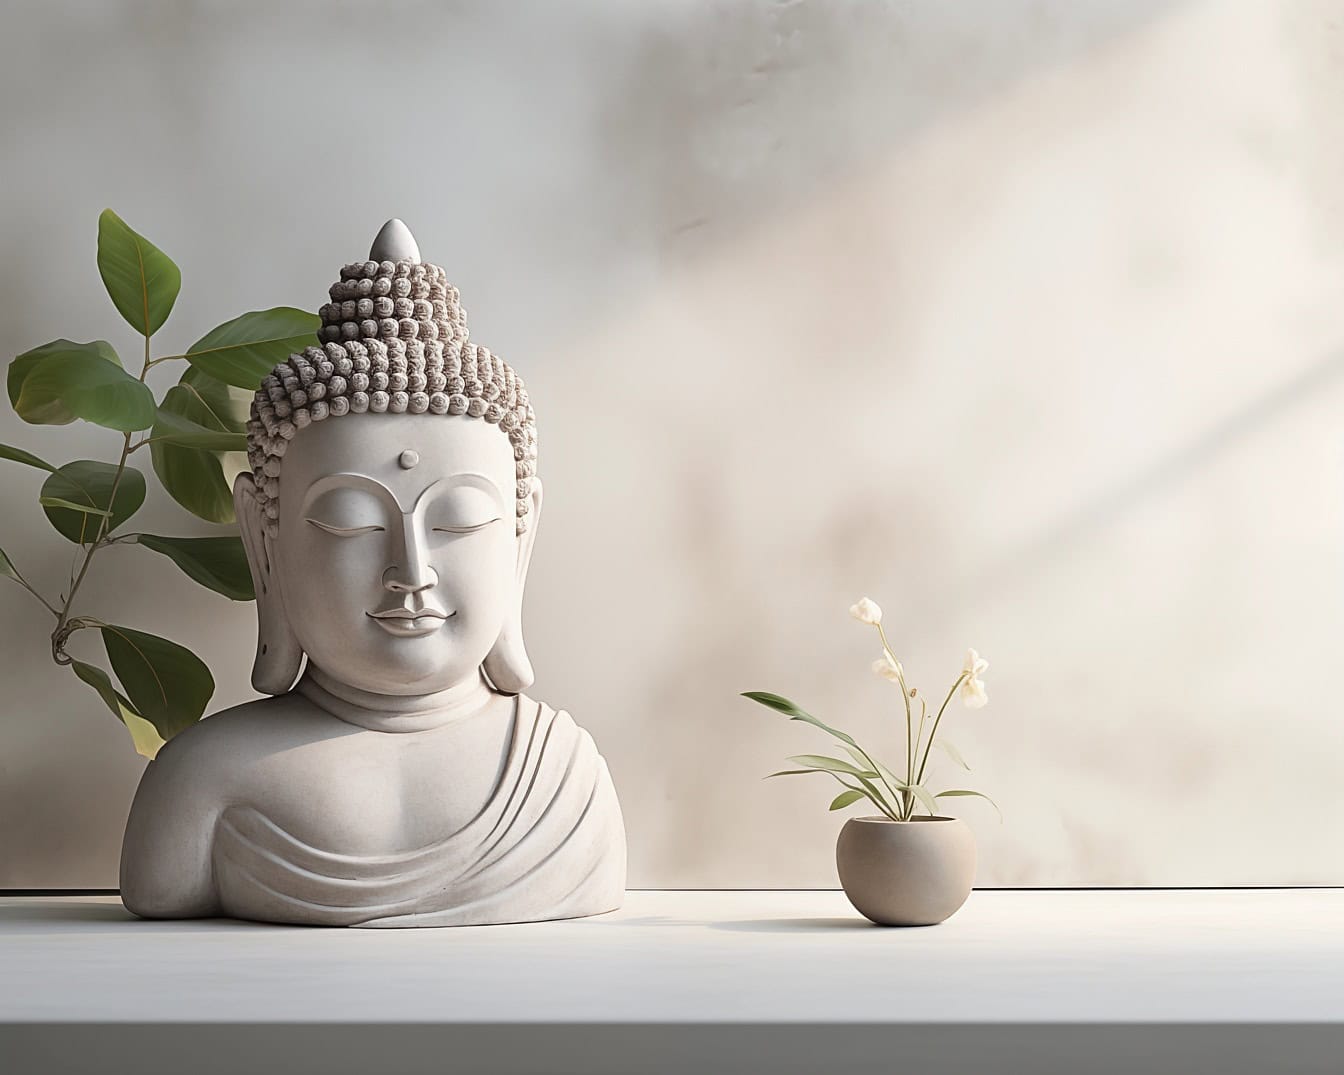 Biela socha hlavy a trupu Budhu vedľa bieleho kvetu zobrazujúca minimalistický dizajn a pokojnú meditáciu